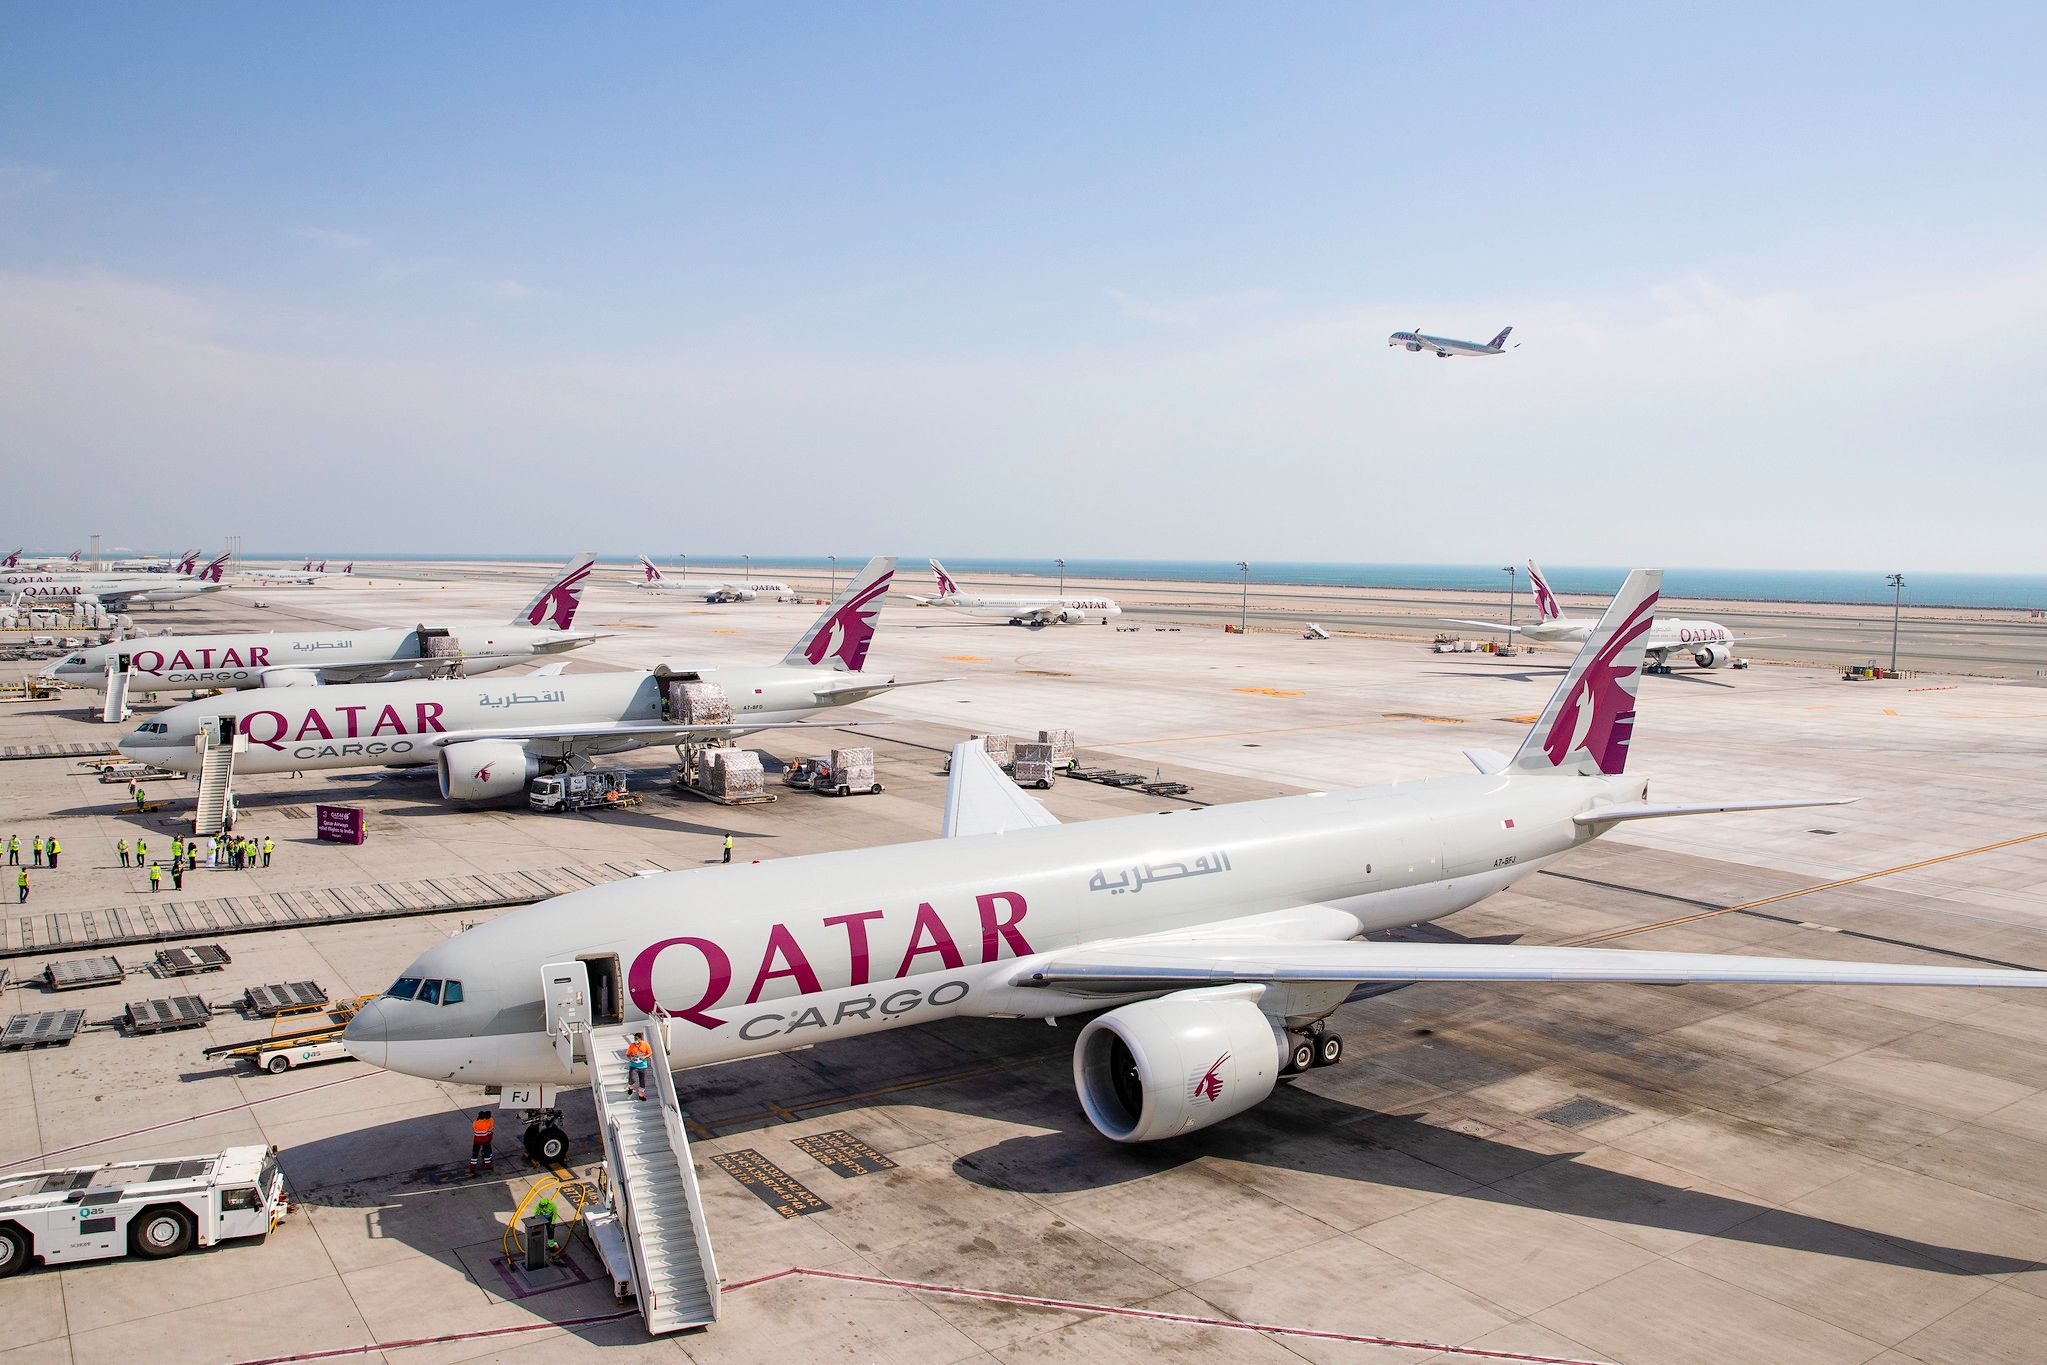 Qatar Cargo planes